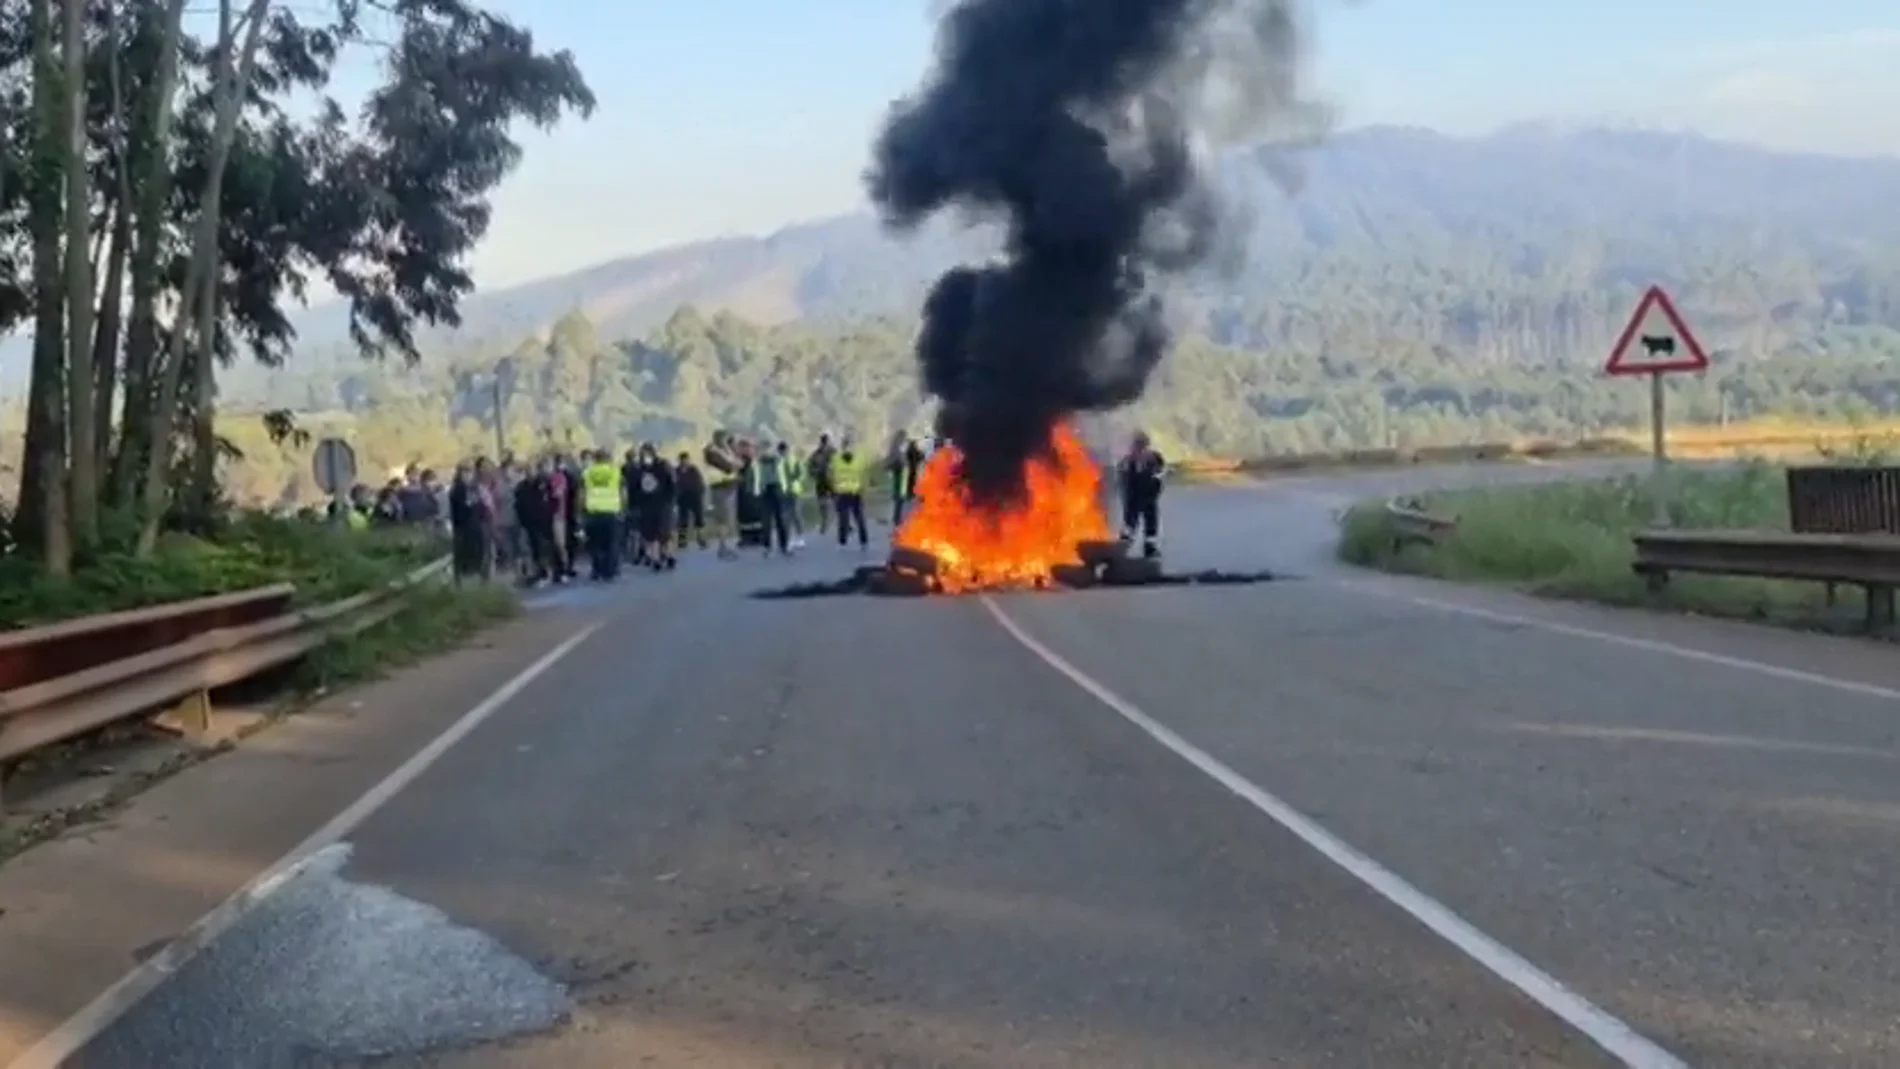 Trabajadores de Alcoa queman barricadas en el acceso a la fábrica en protesta por el despido colectivo